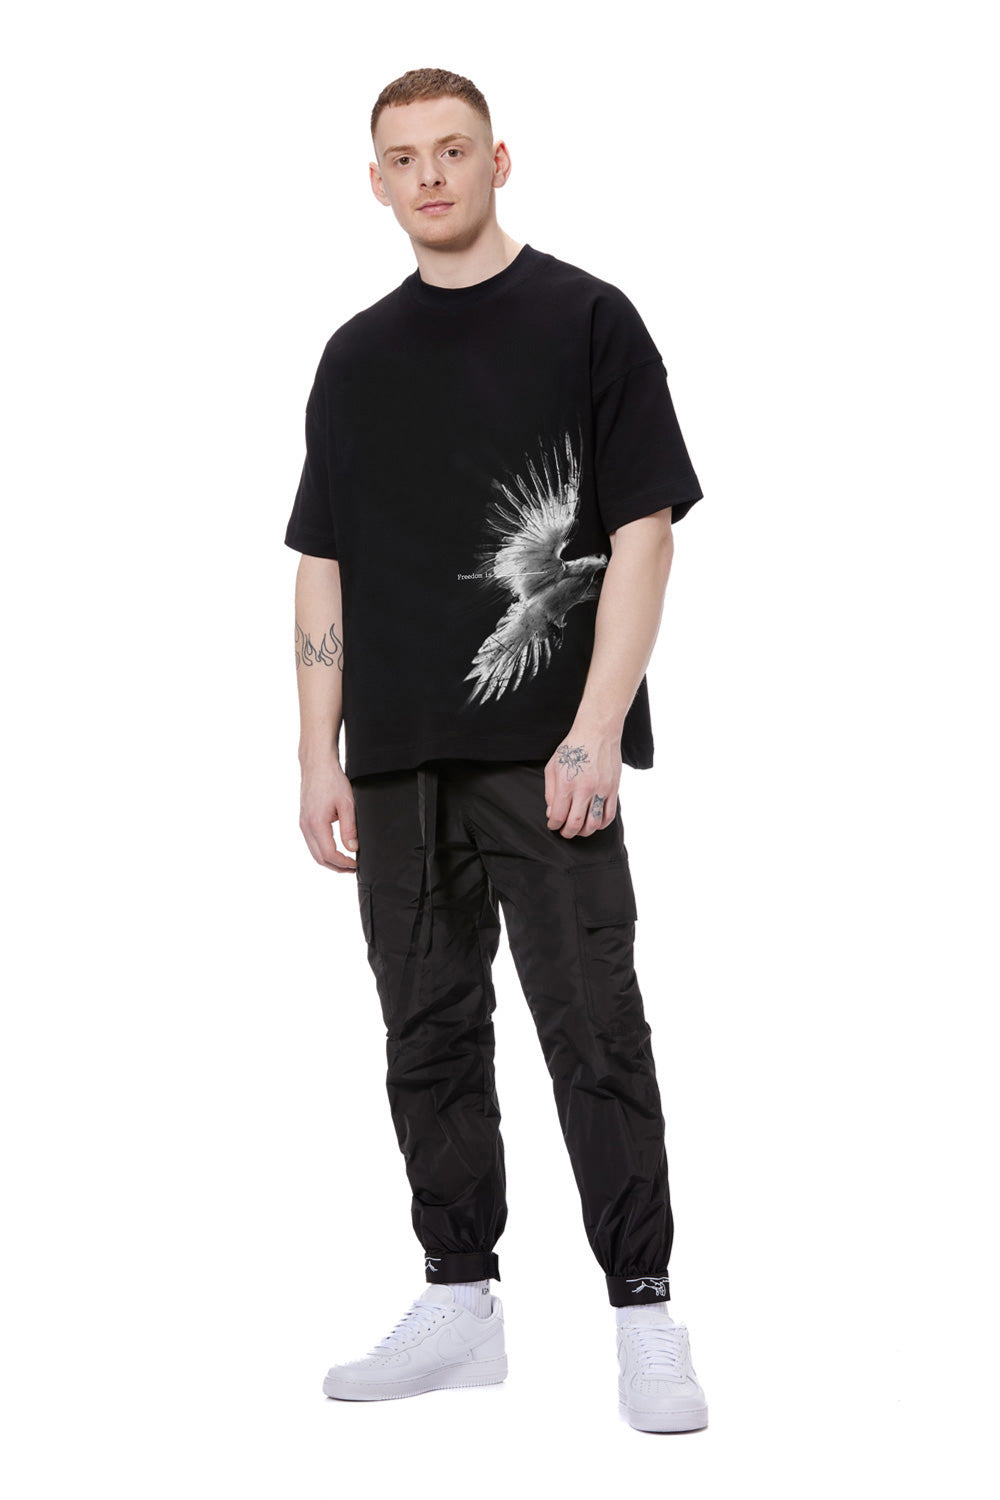 Tricou barbati negru printat Phoenix